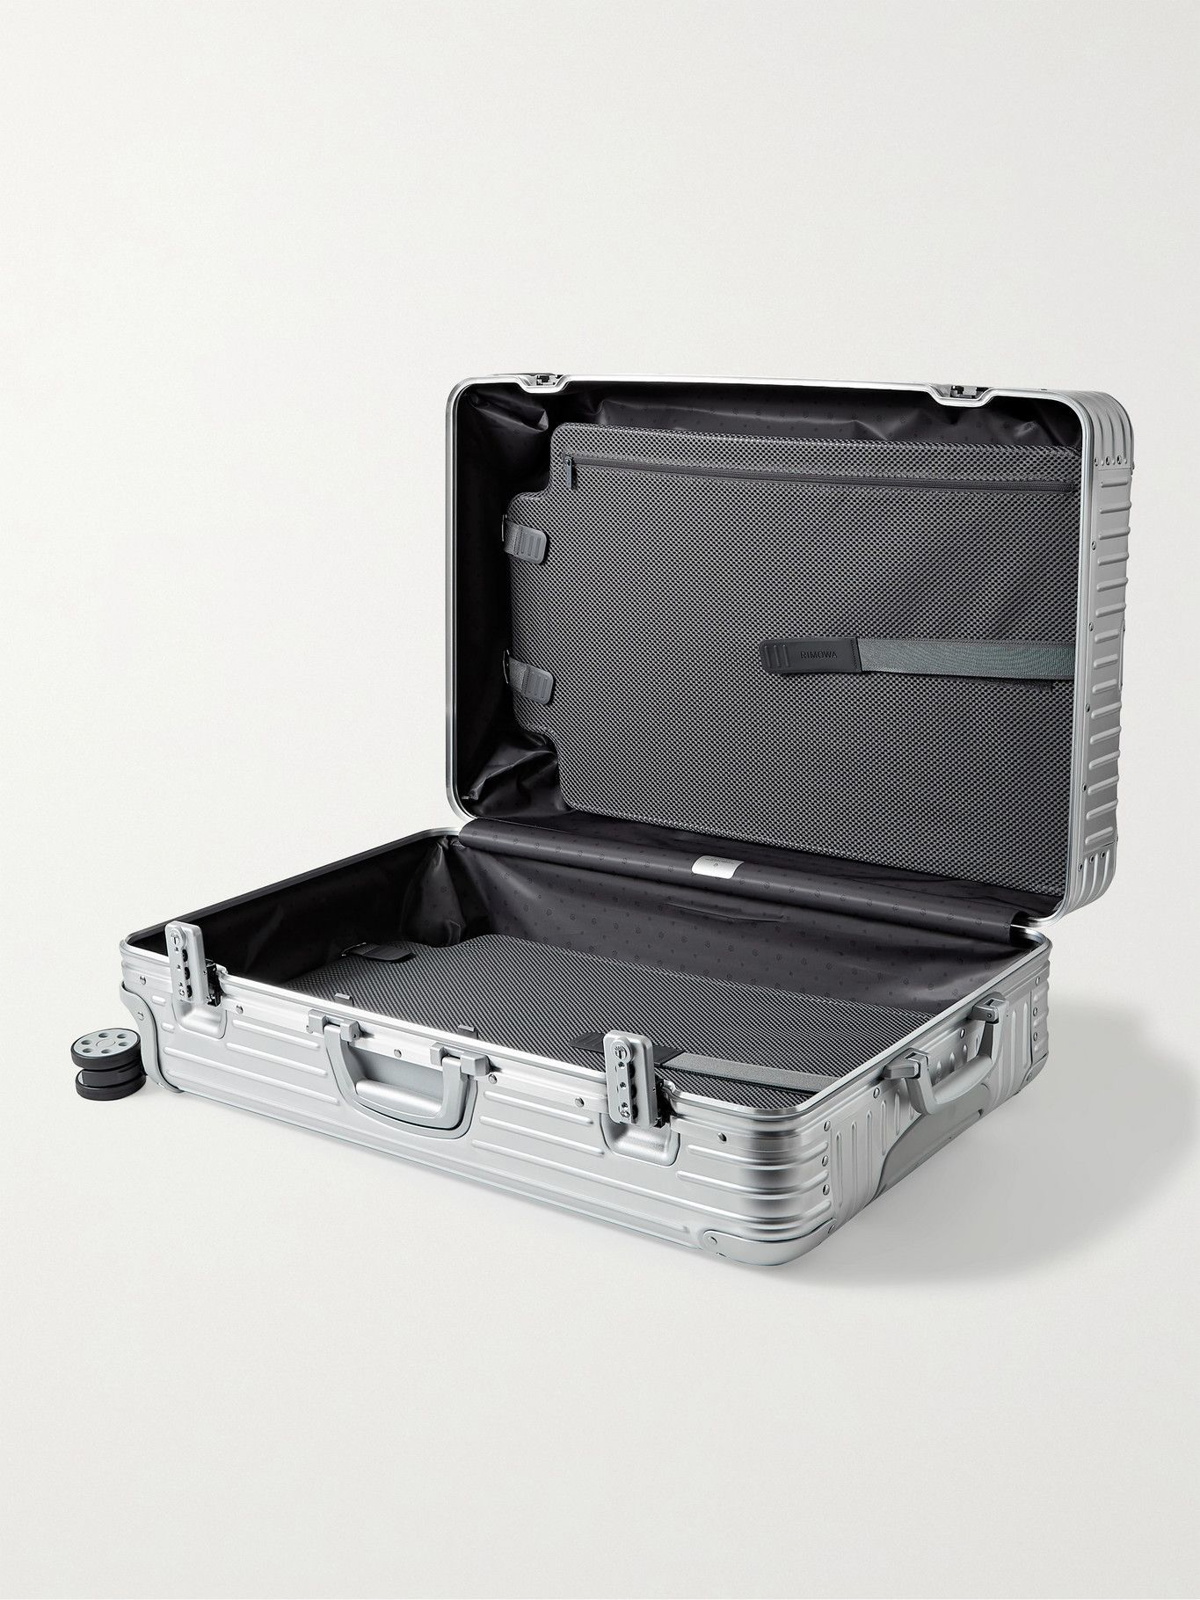 RIMOWA Original Check-in M Suitcase in Silver - Aluminium - Unisex